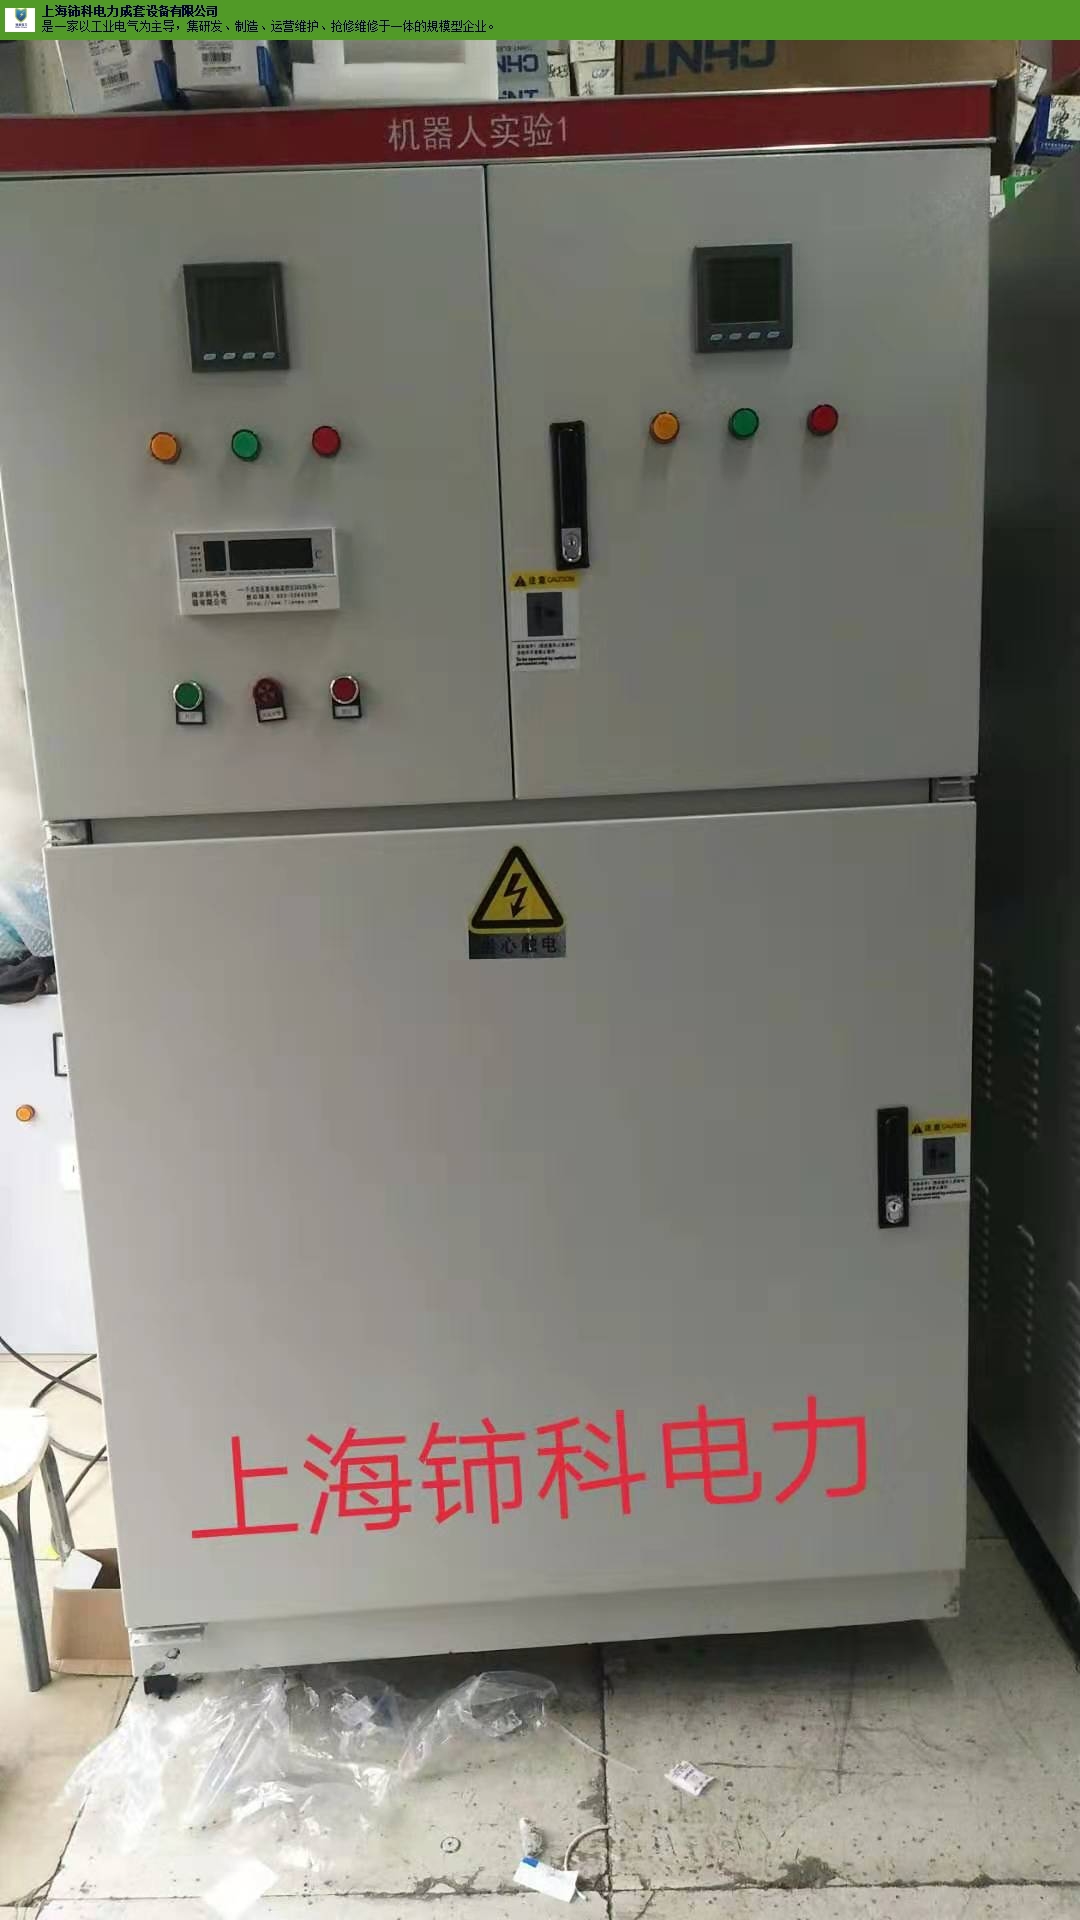 嘉定区正规配电柜规格齐全 诚信为本「上海铈科电力成套设备供应」